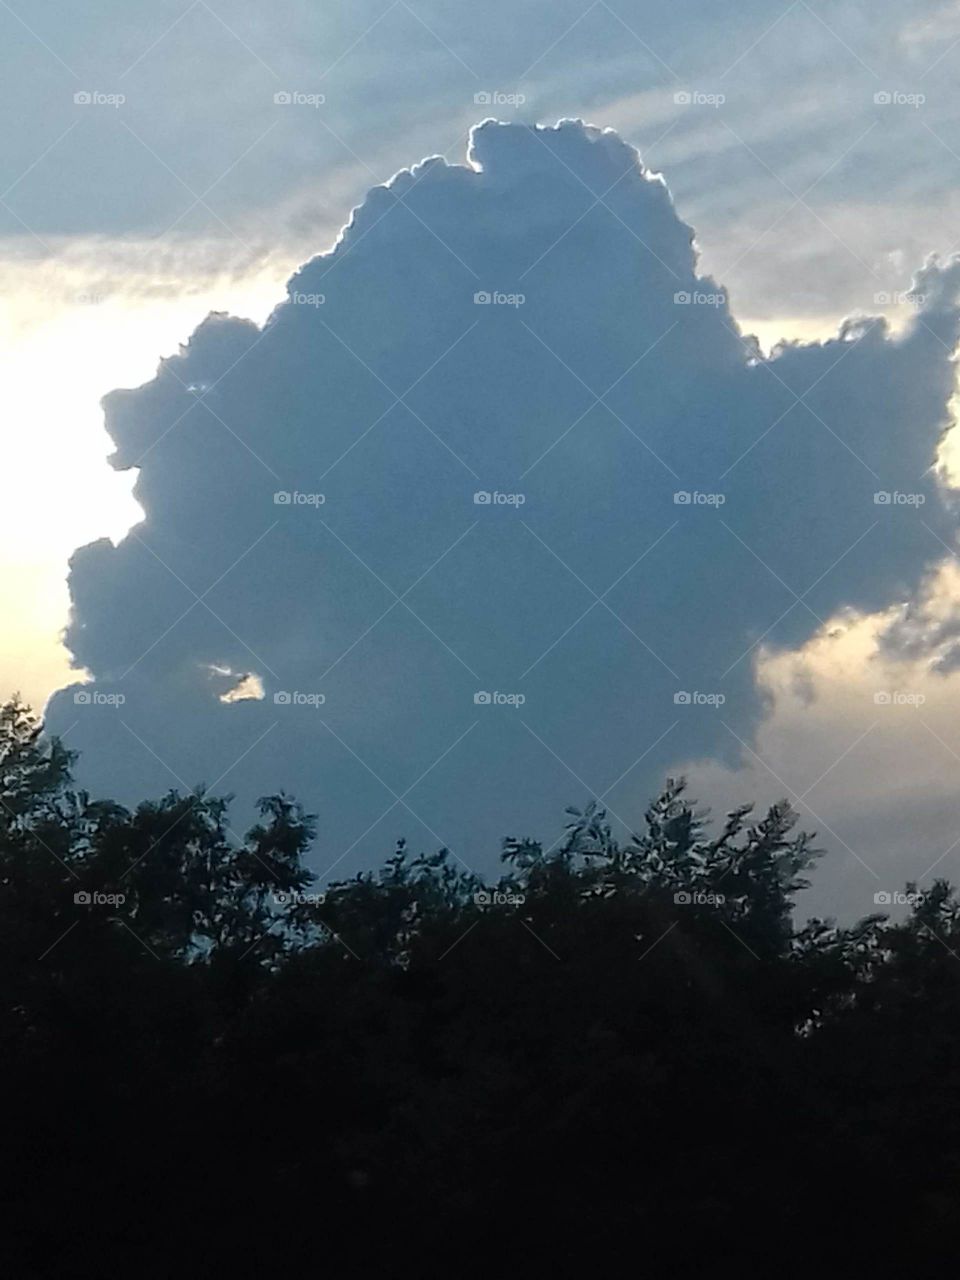 the big cloud